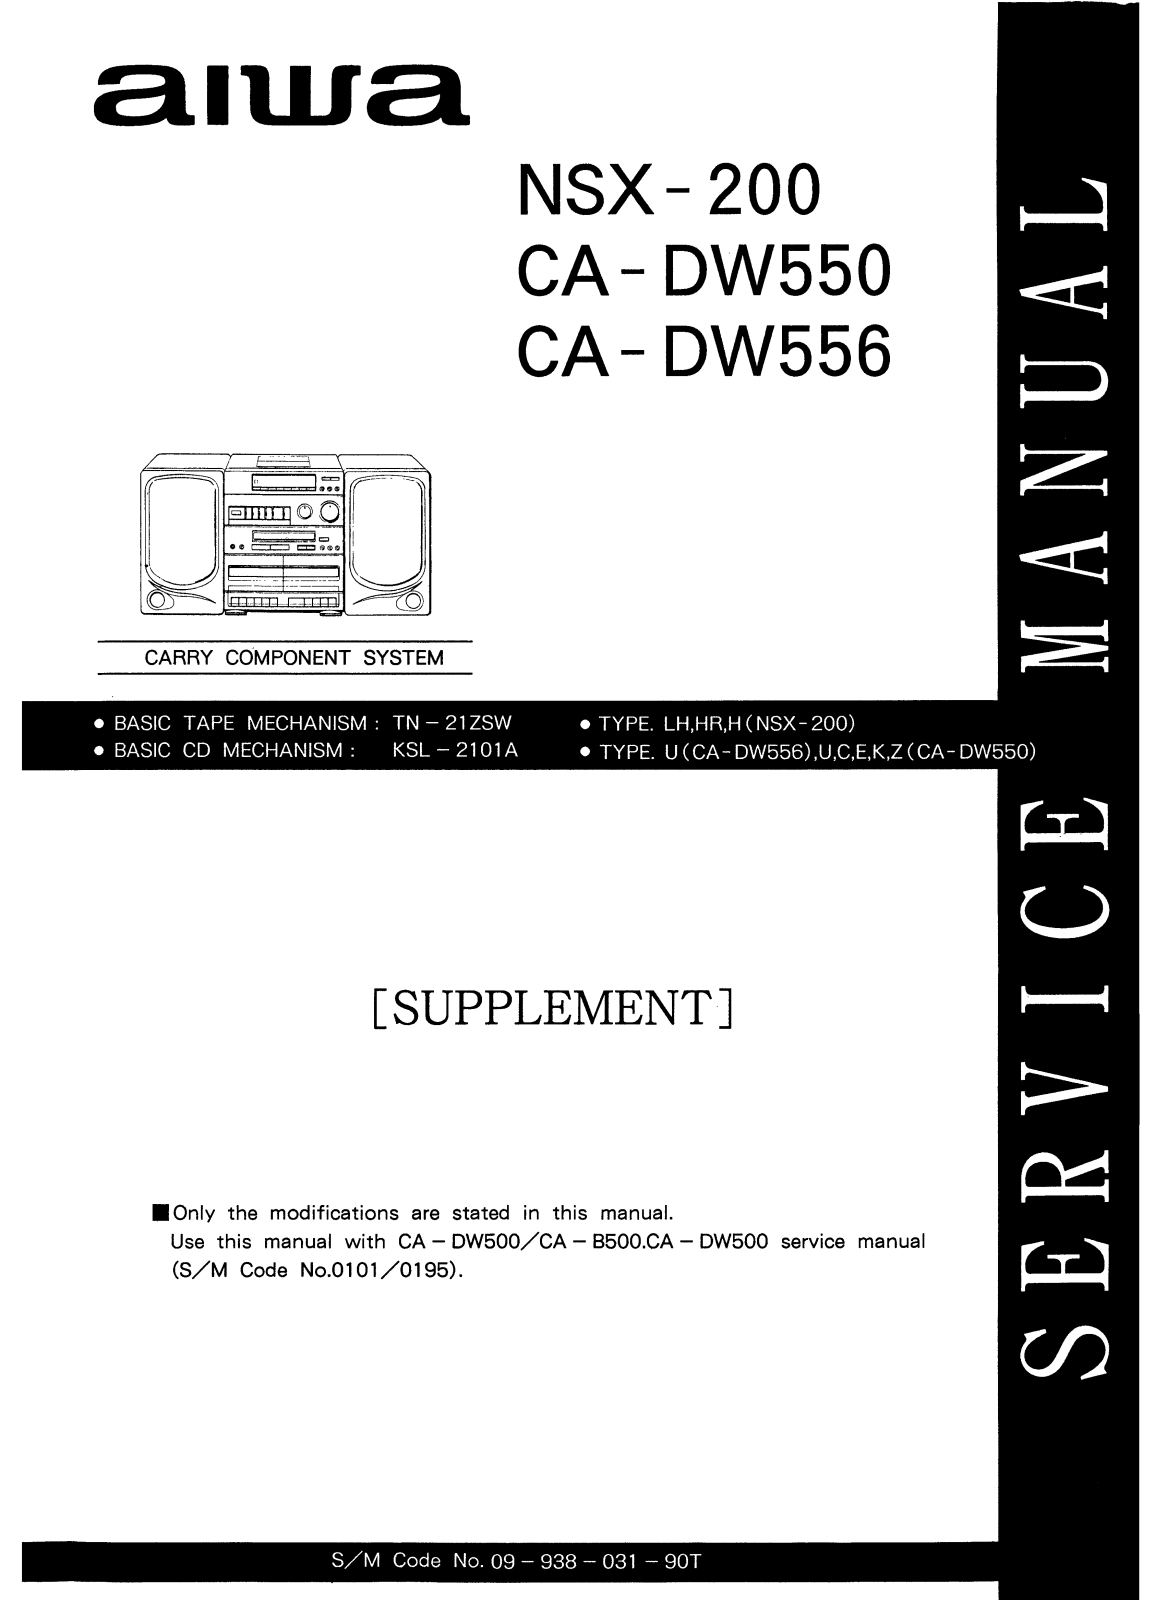 Aiwa CADW-550, CADW-556, NSX-200 Service manual